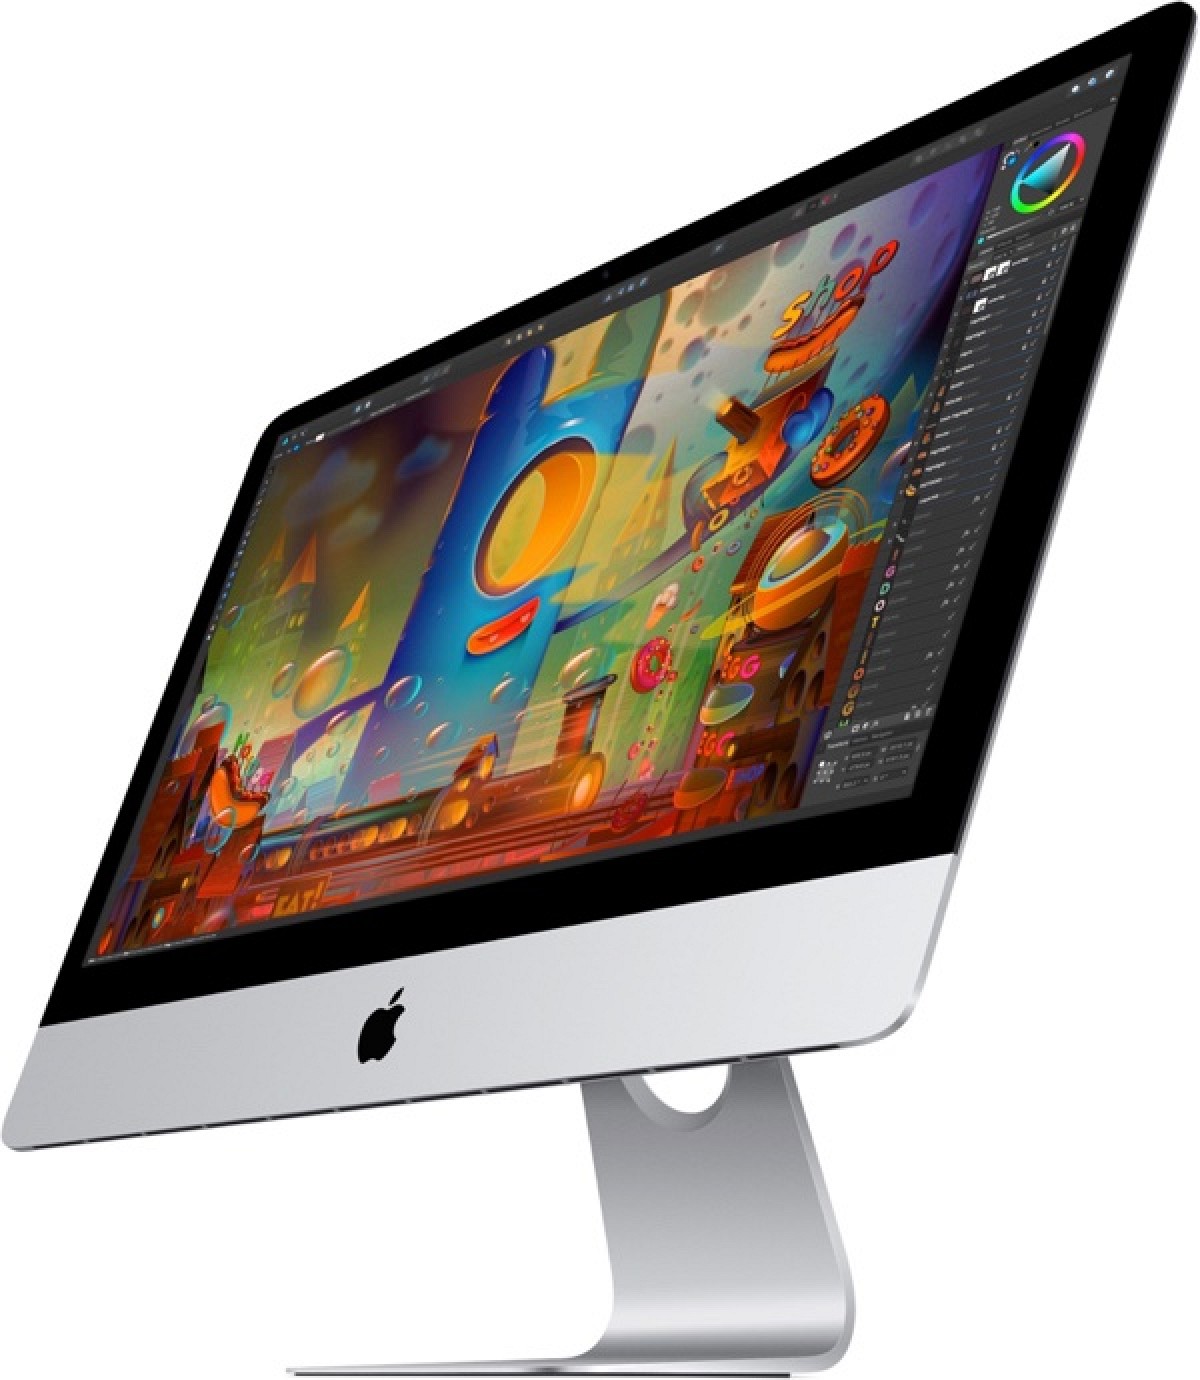 timmerman omdraaien lezer iMac 27′ Retina scherm i7 4,0GHz 24GB 1867MHz 2,1 TB FusionDrive –  AppleSupport.me – "Alles wat buiten fabrieksgarantie valt"